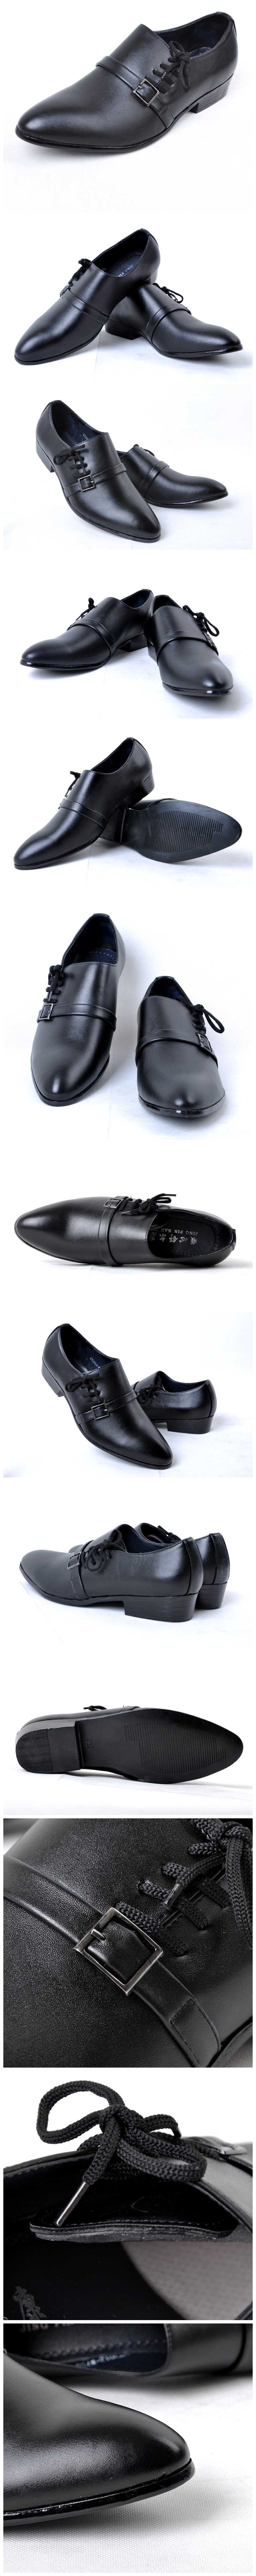 cari sepatu pria formal untuk ngantor ? disini lengkap koleksi ratusan model sepatu formal pria, klik dan pesan online sekarang.